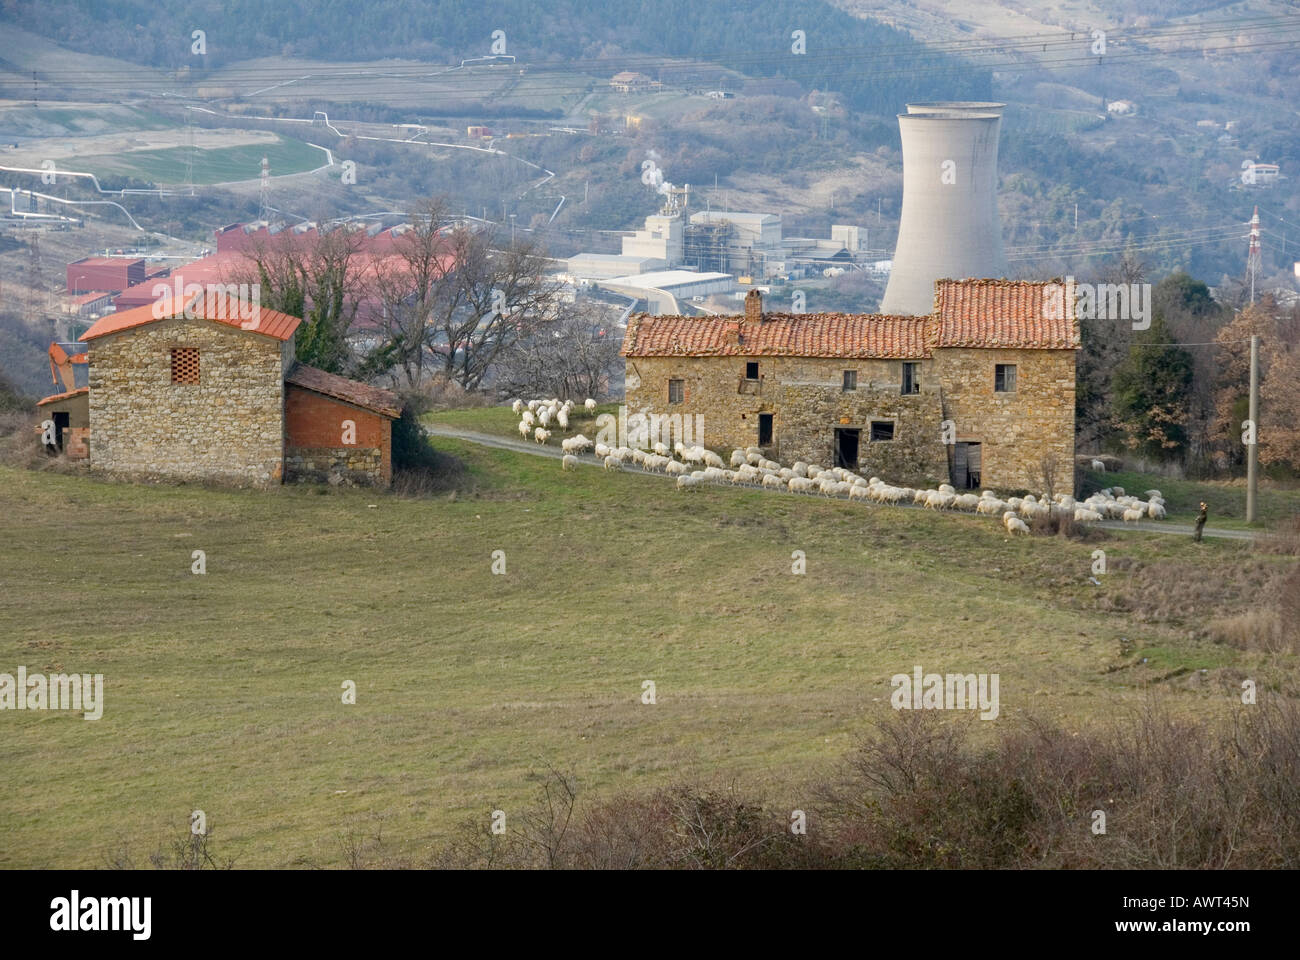 Bâtiments de ferme typique de la Toscane avec troupeau de moutons devant les tours de refroidissement de la centrale électrique de l'Énergie Géothermique Enel Banque D'Images